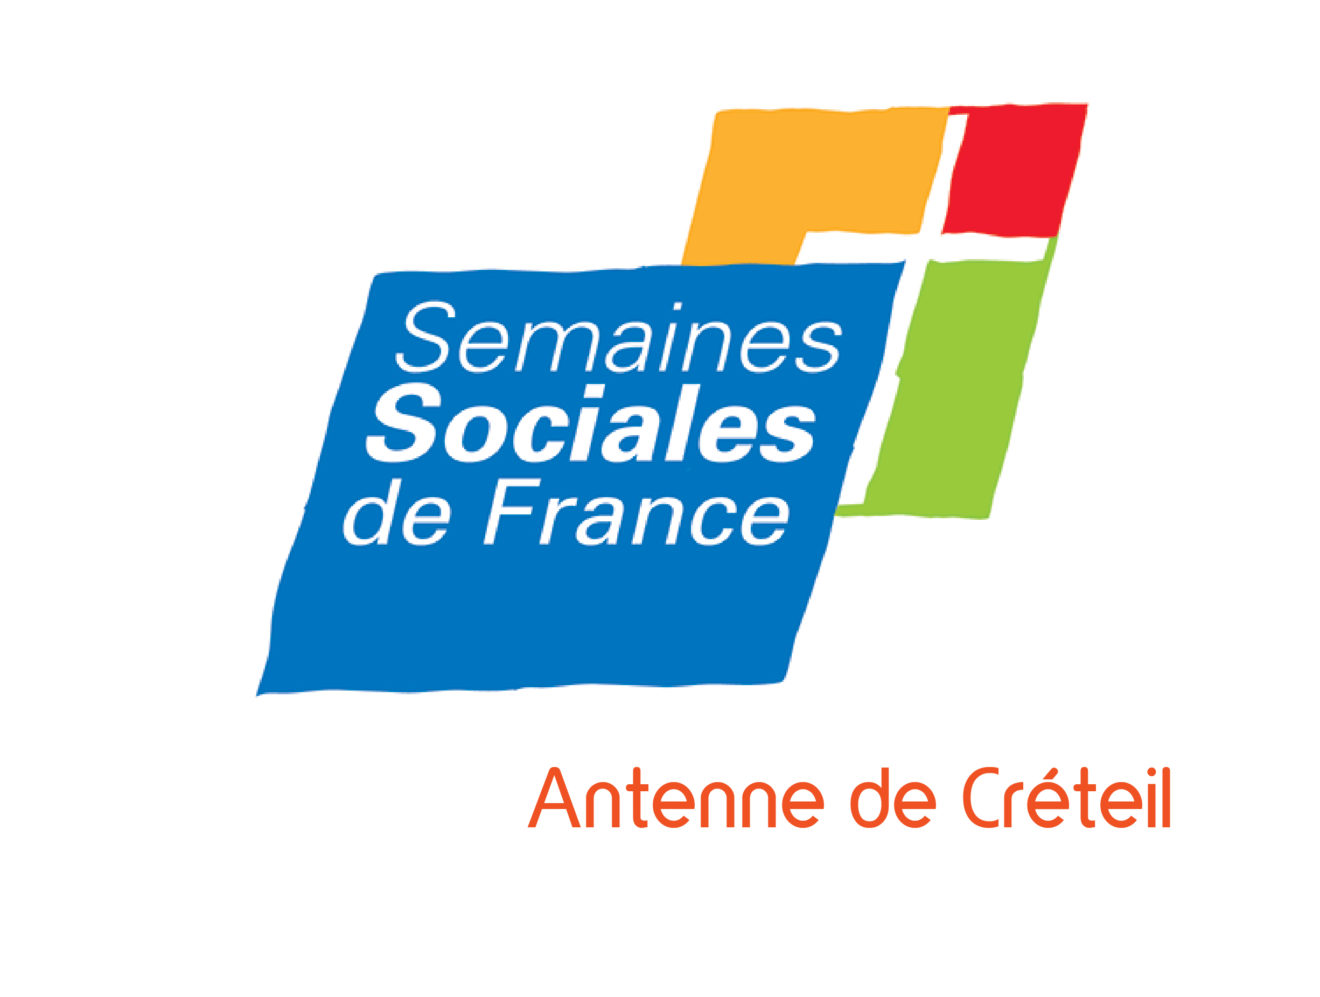 Tribune des Semaines Sociales de France - Antenne de Créteil